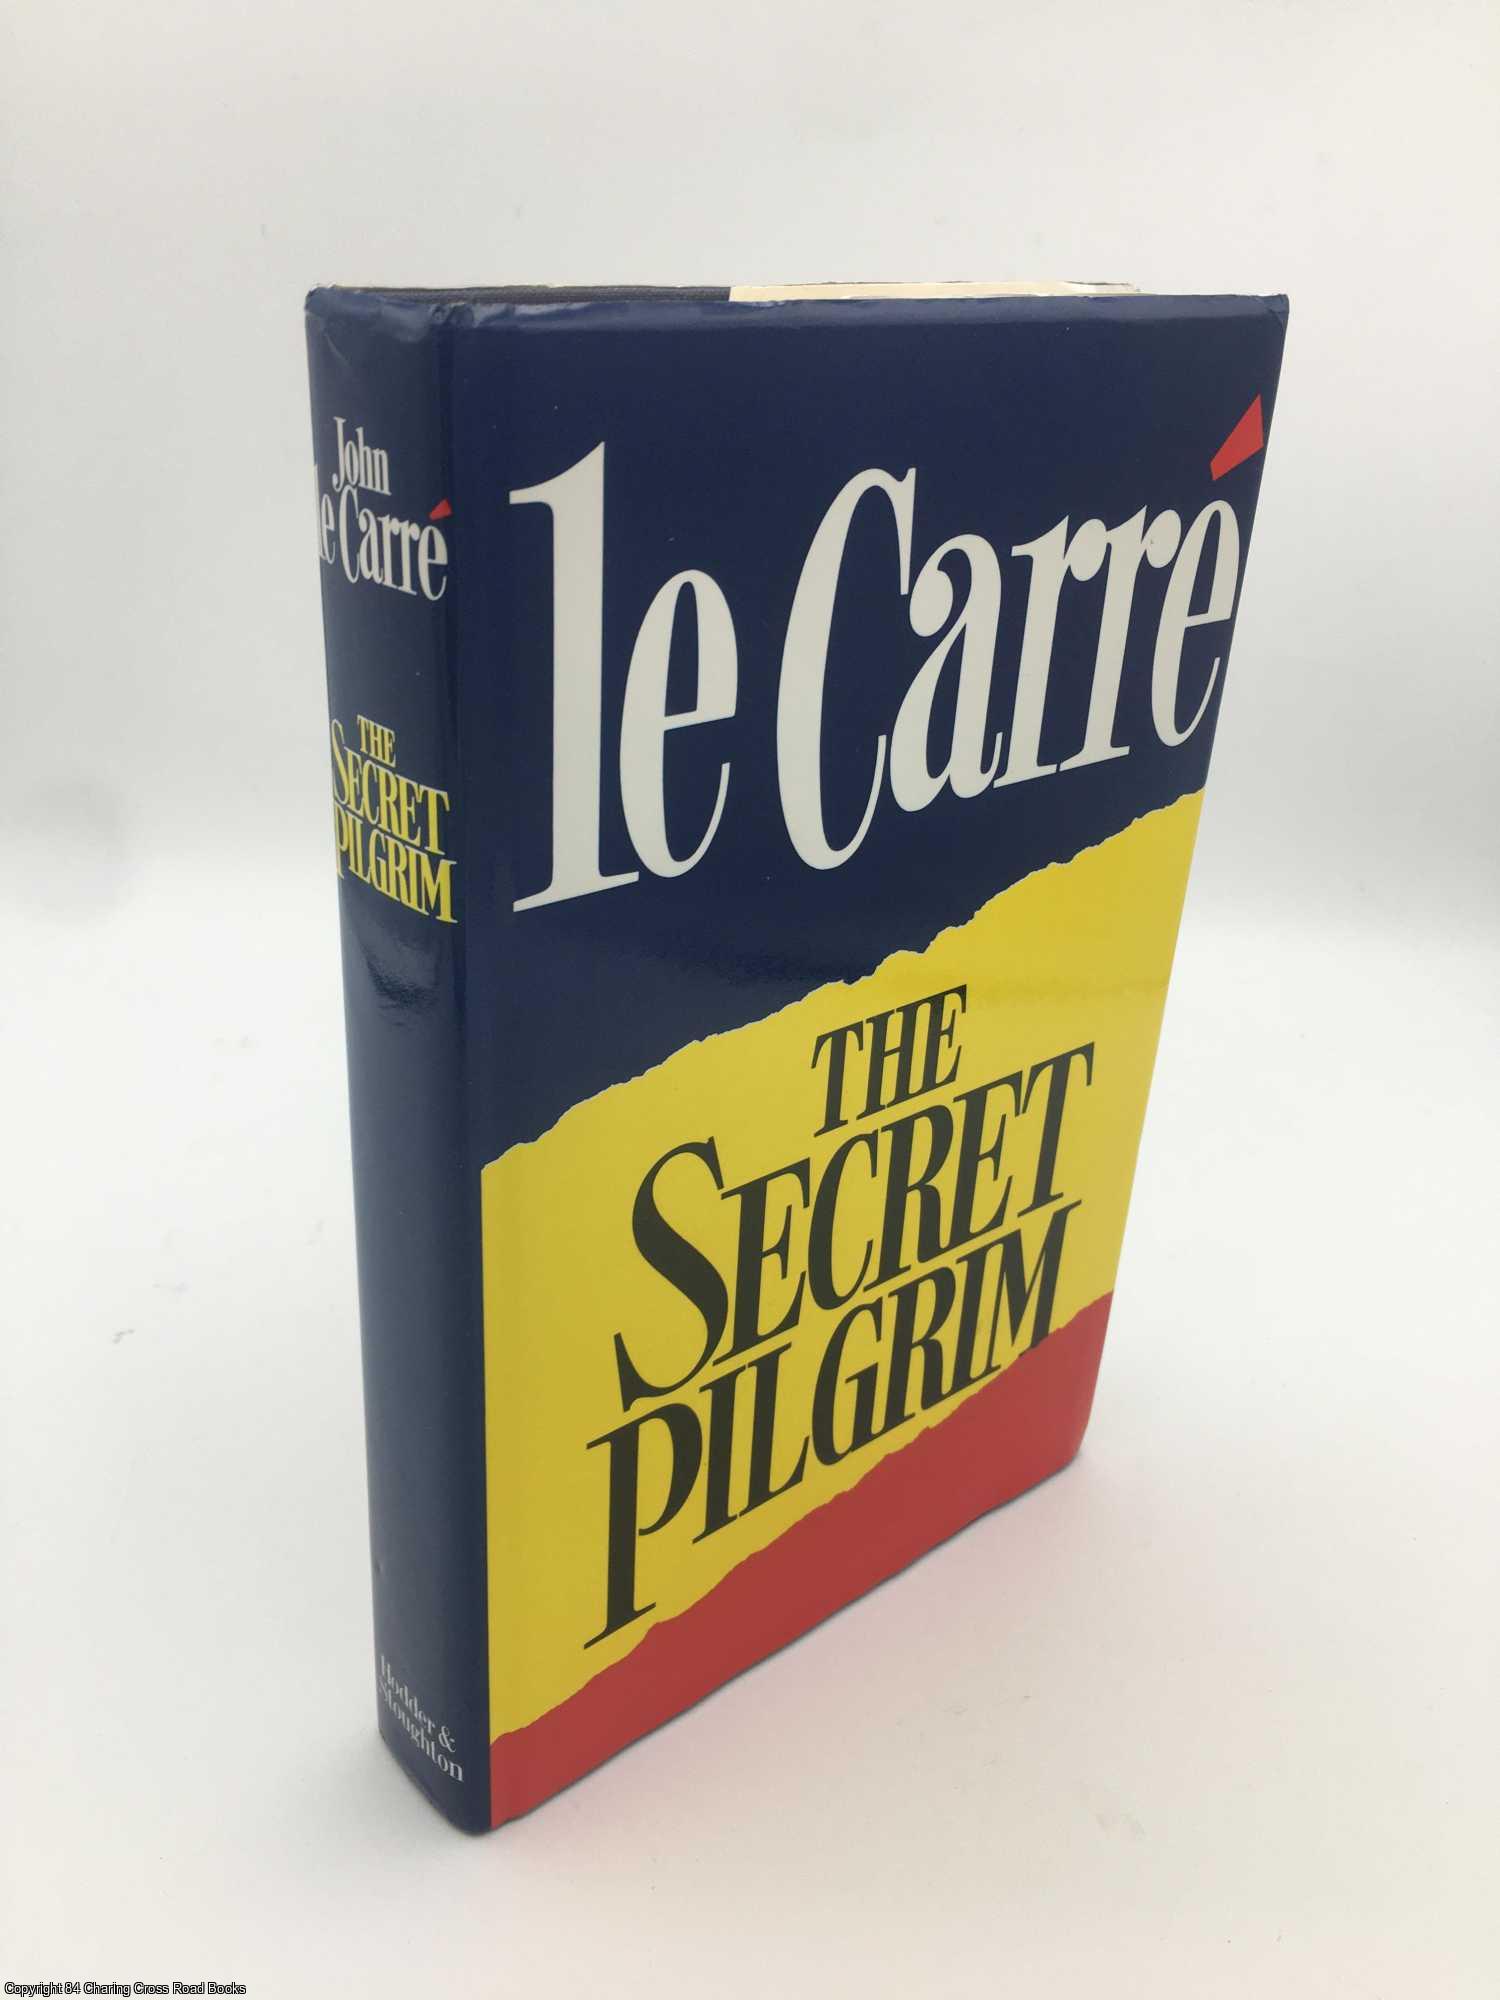 Carre, John Le - The Secret Pilgrim